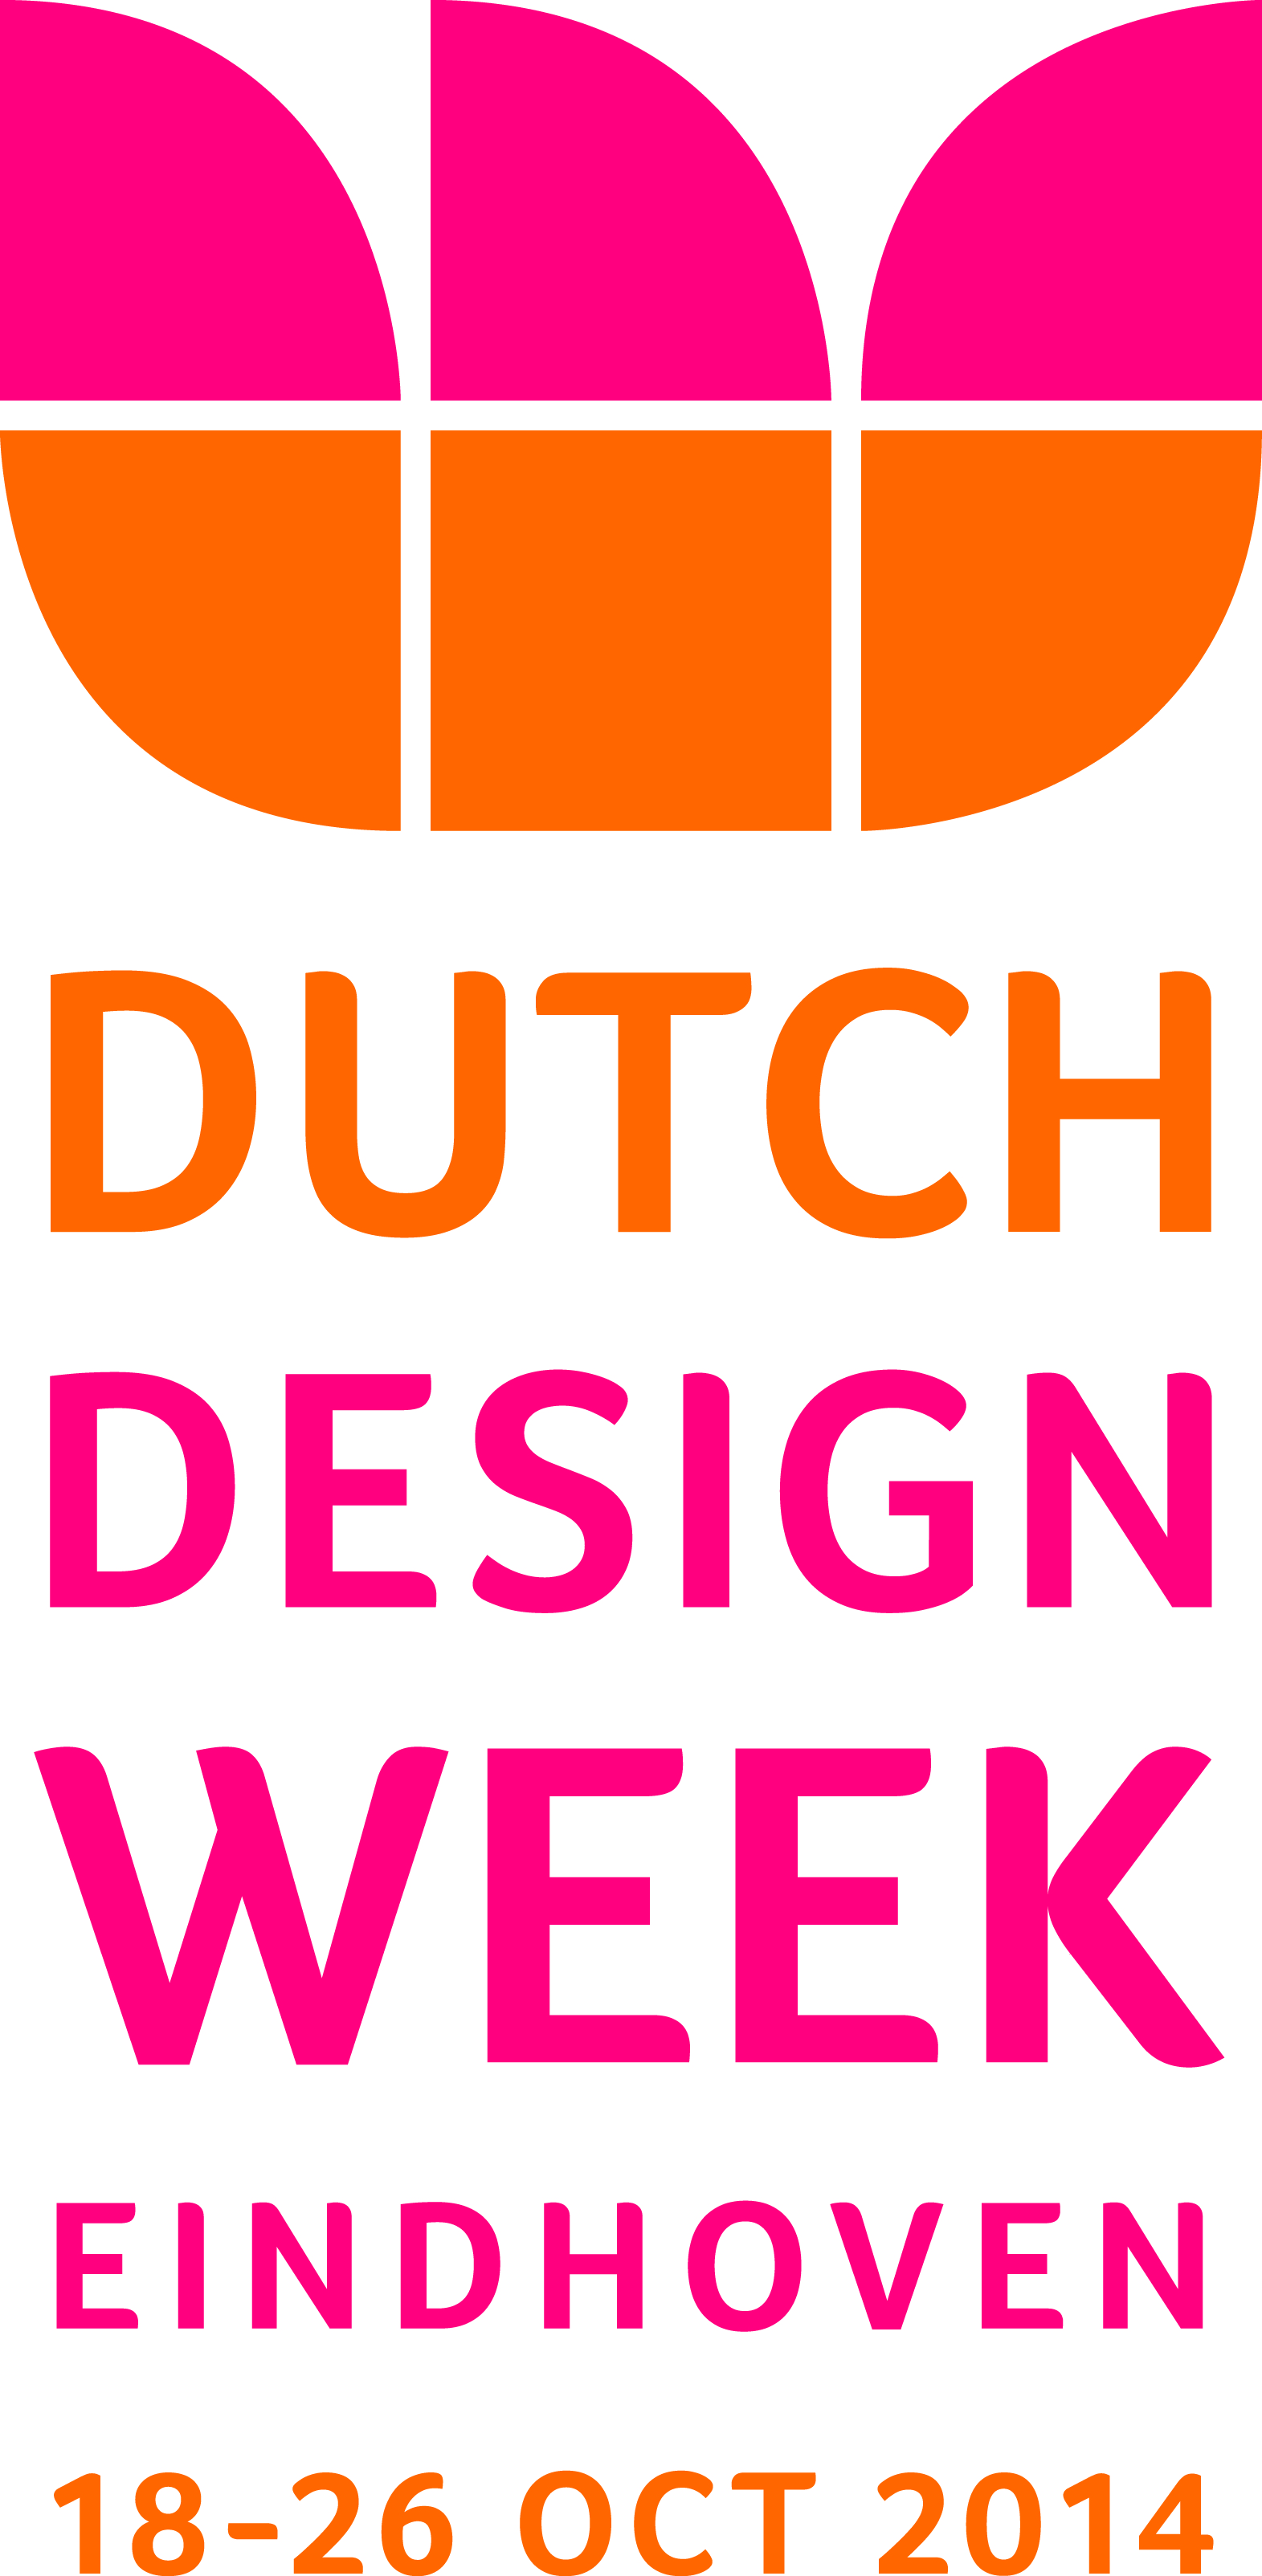 Studio van Doorn - Rene van Doorn - Dutch Design Week